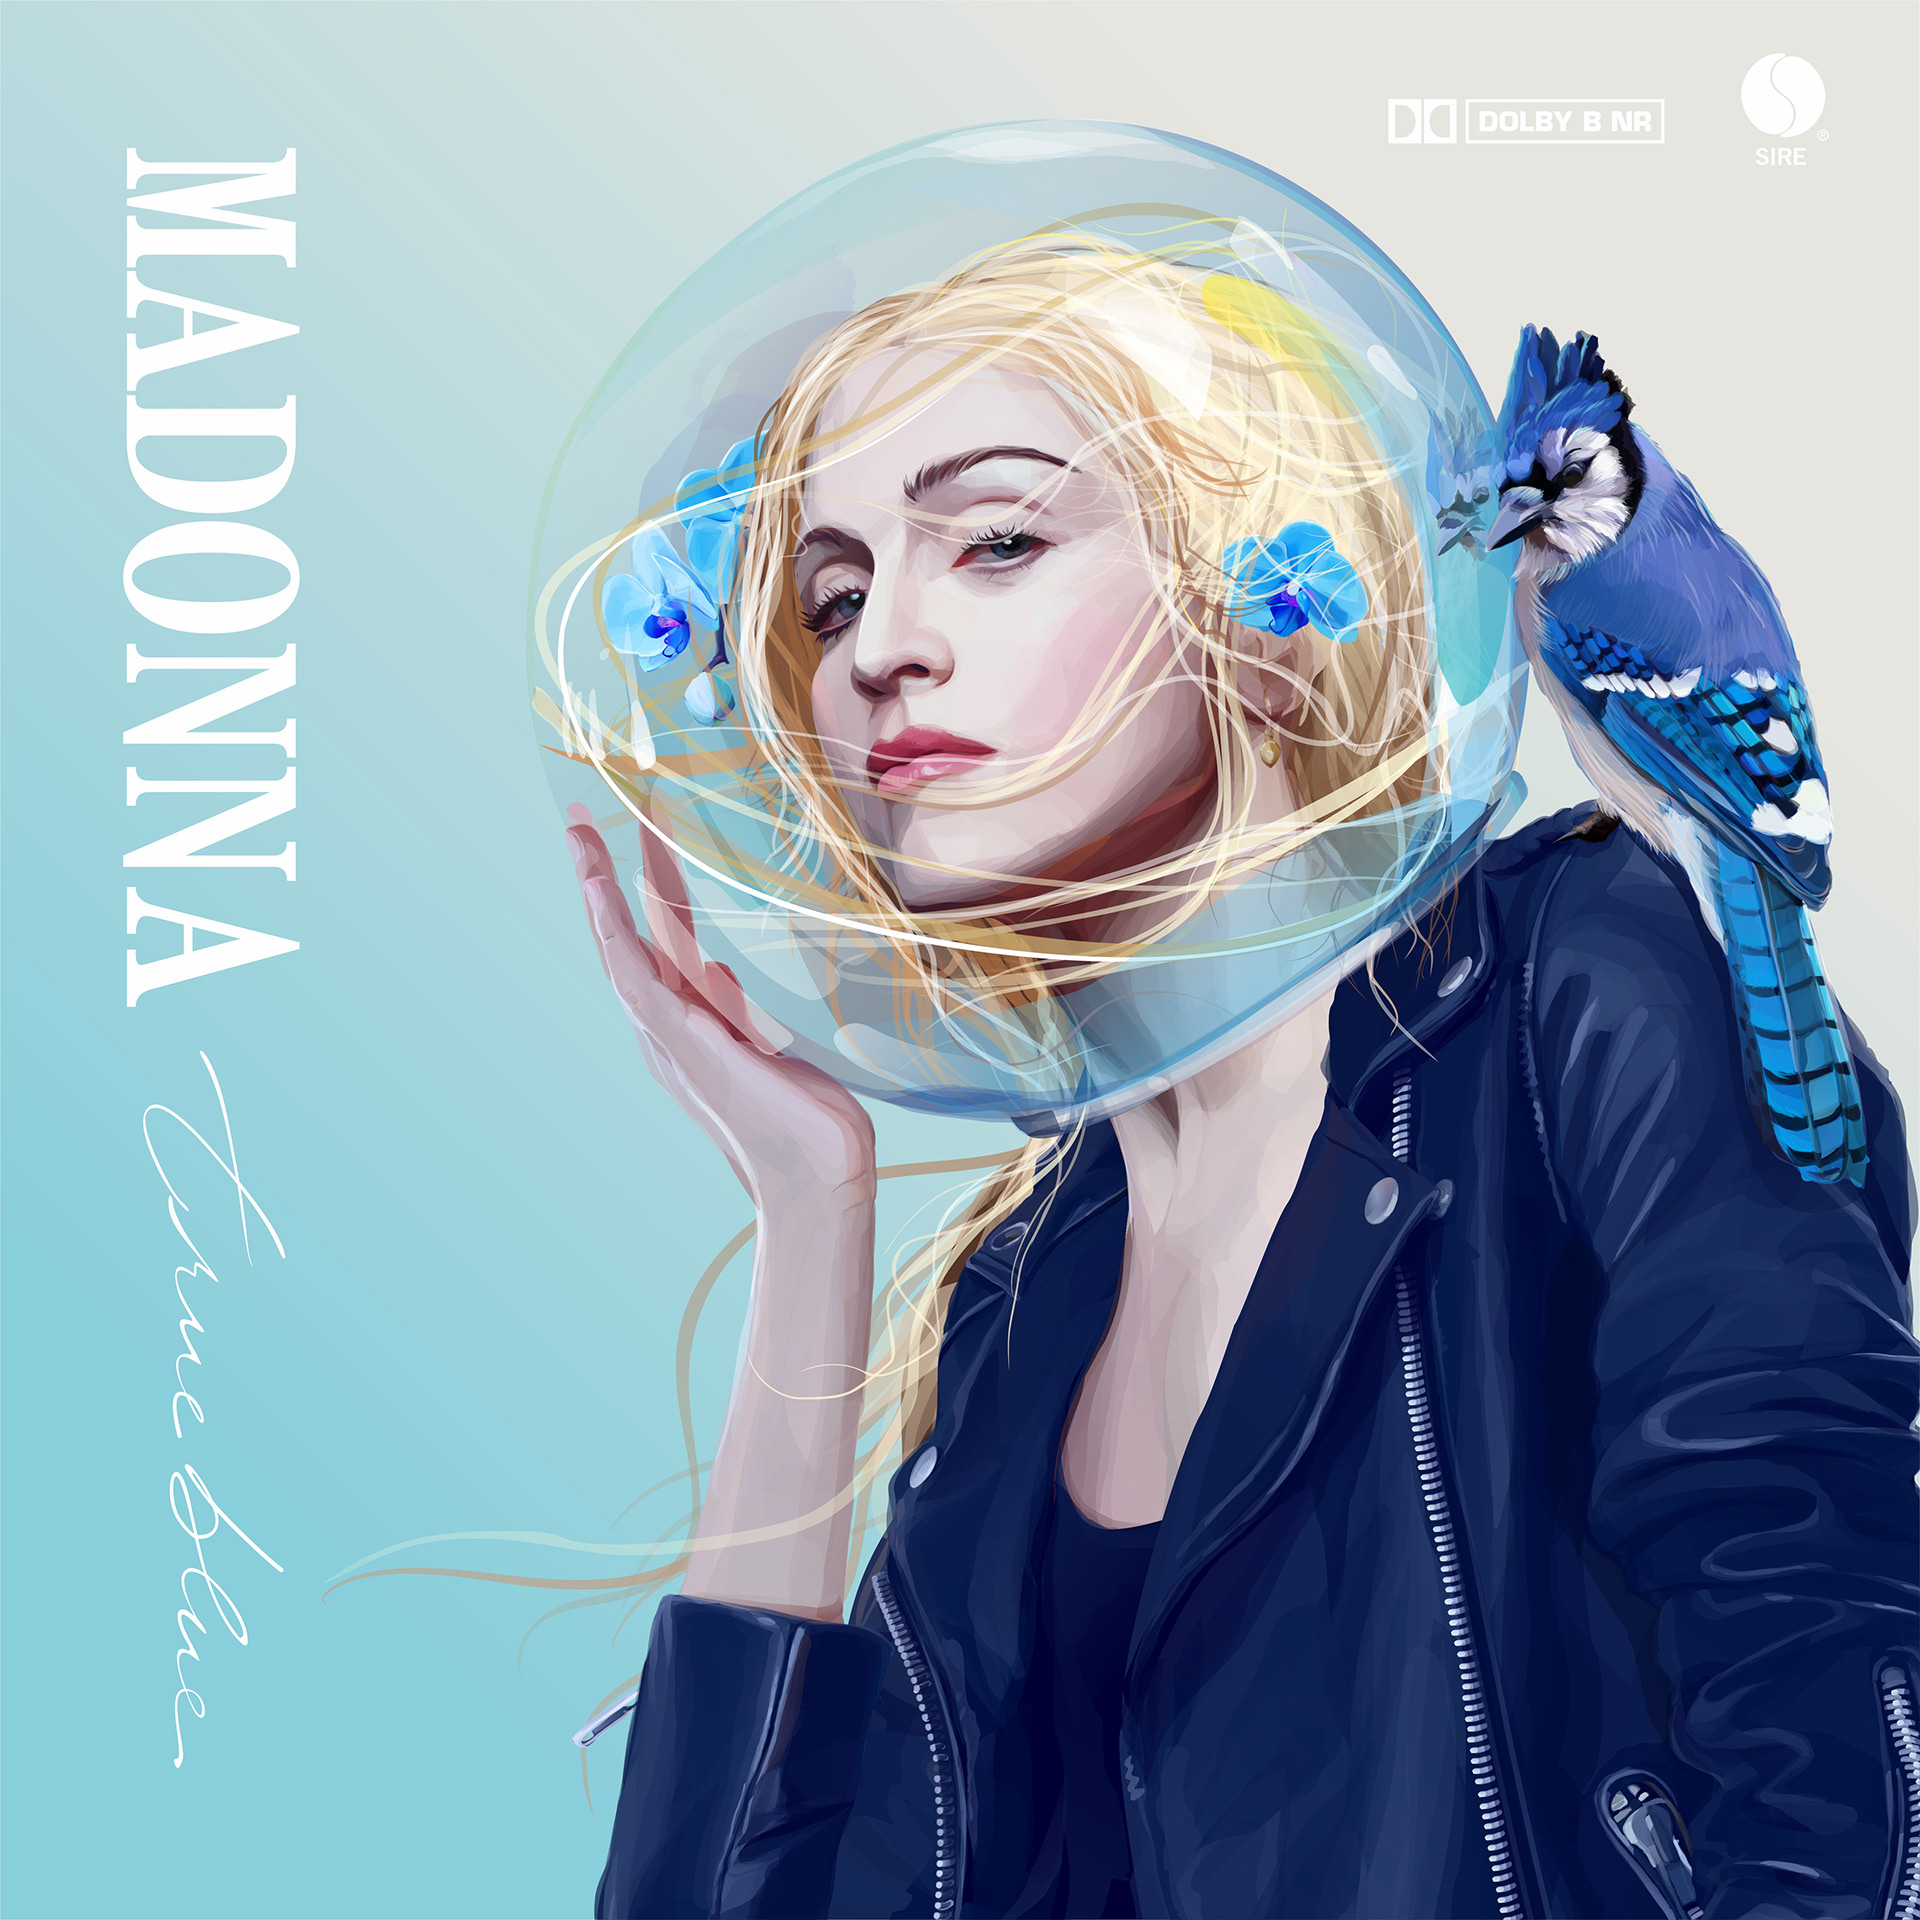 True Blue (Madonna album cover)